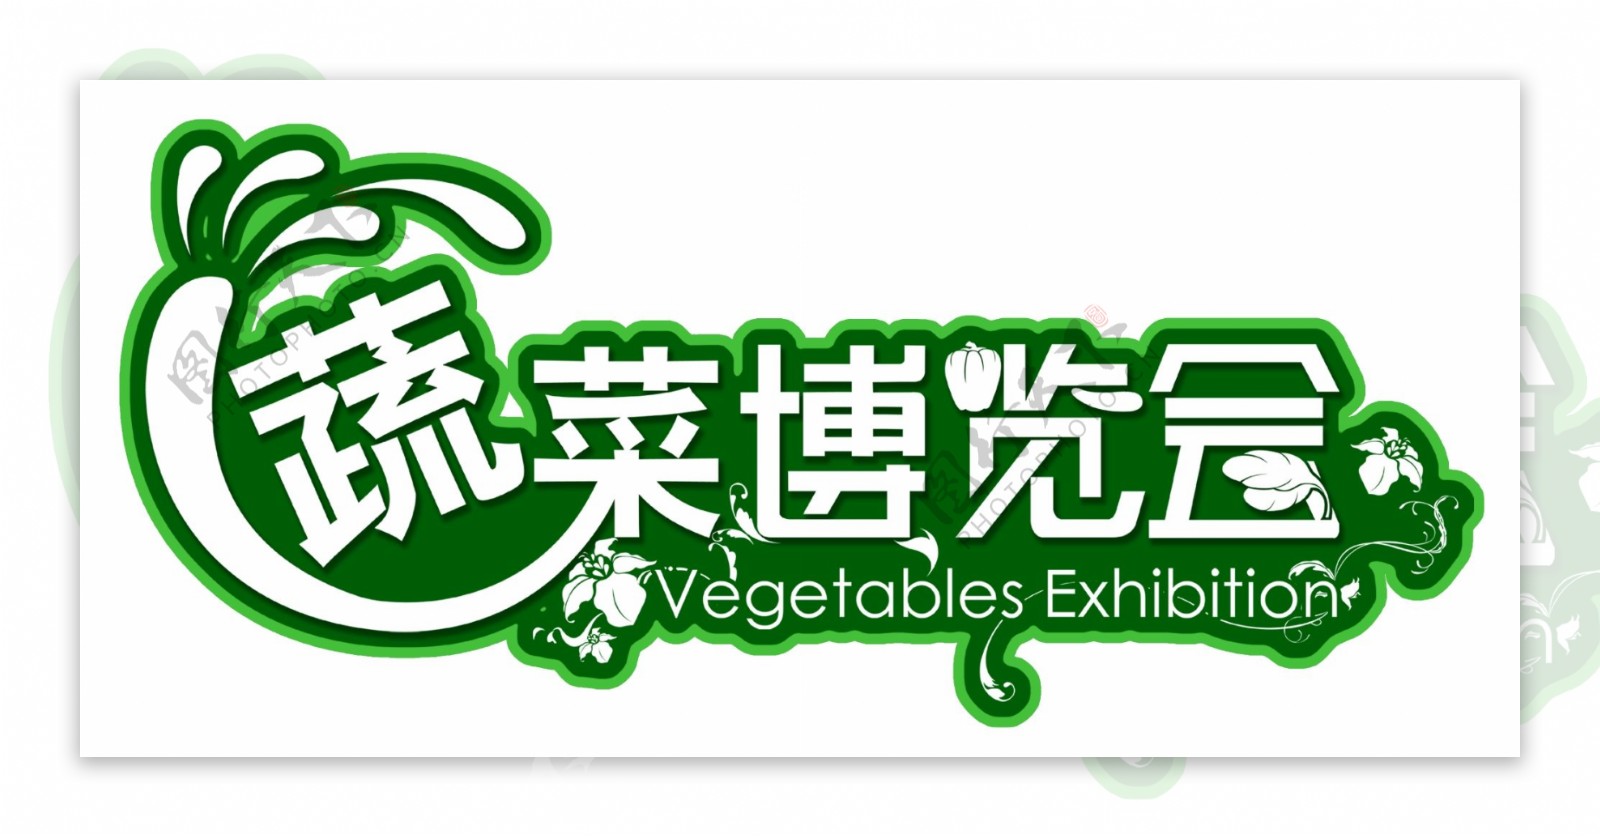 蔬菜博览会吊牌图片